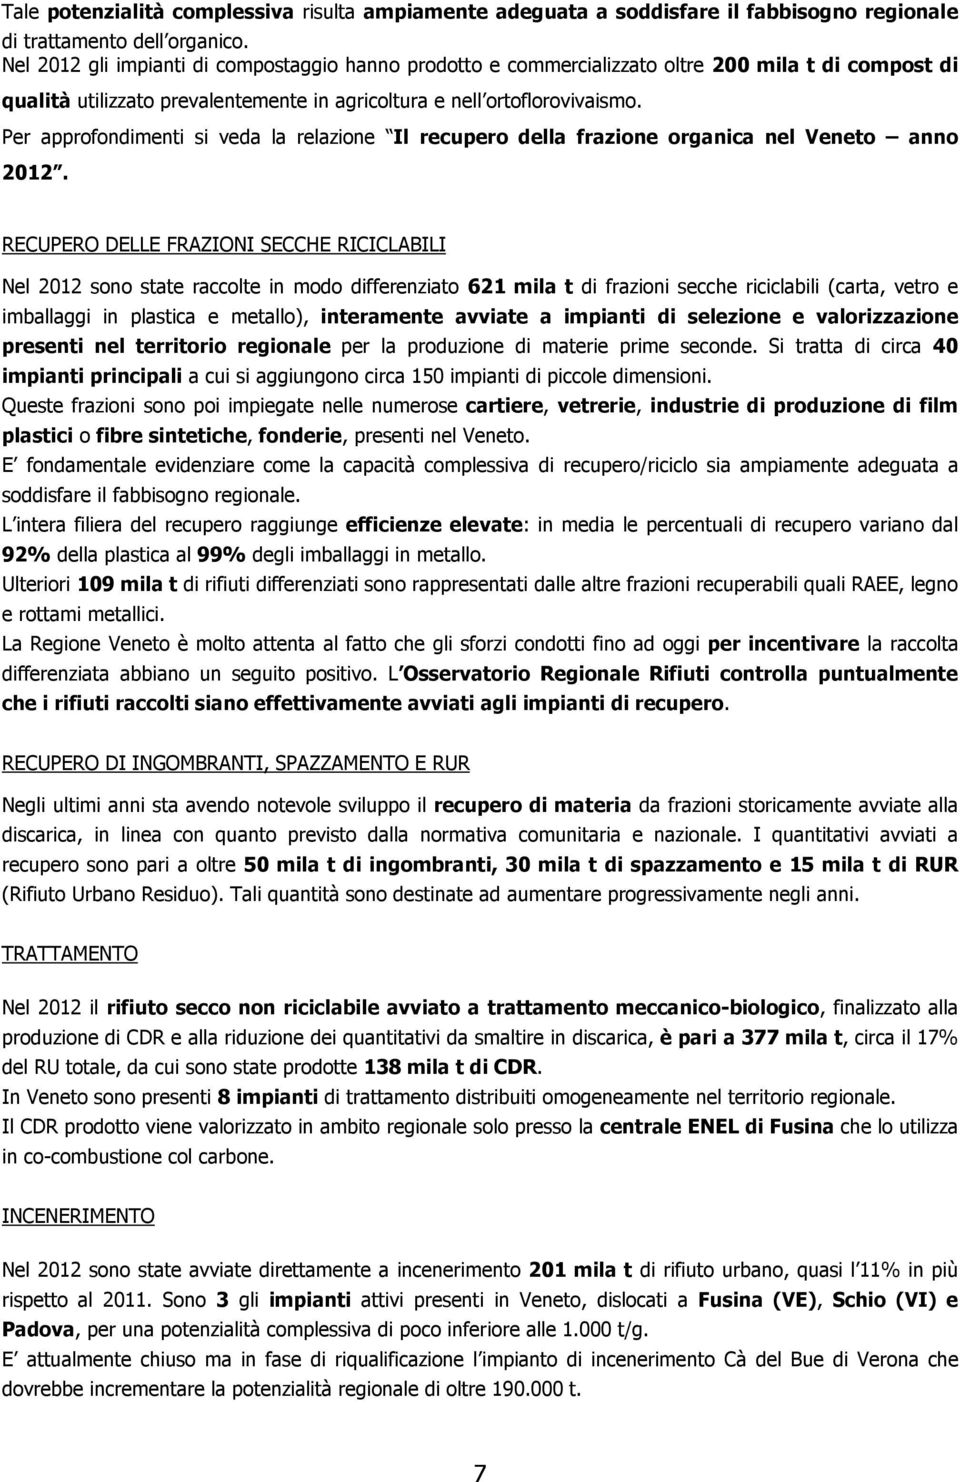 Per approfondimenti si veda la relazione Il recupero della frazione organica nel Veneto anno 2012.